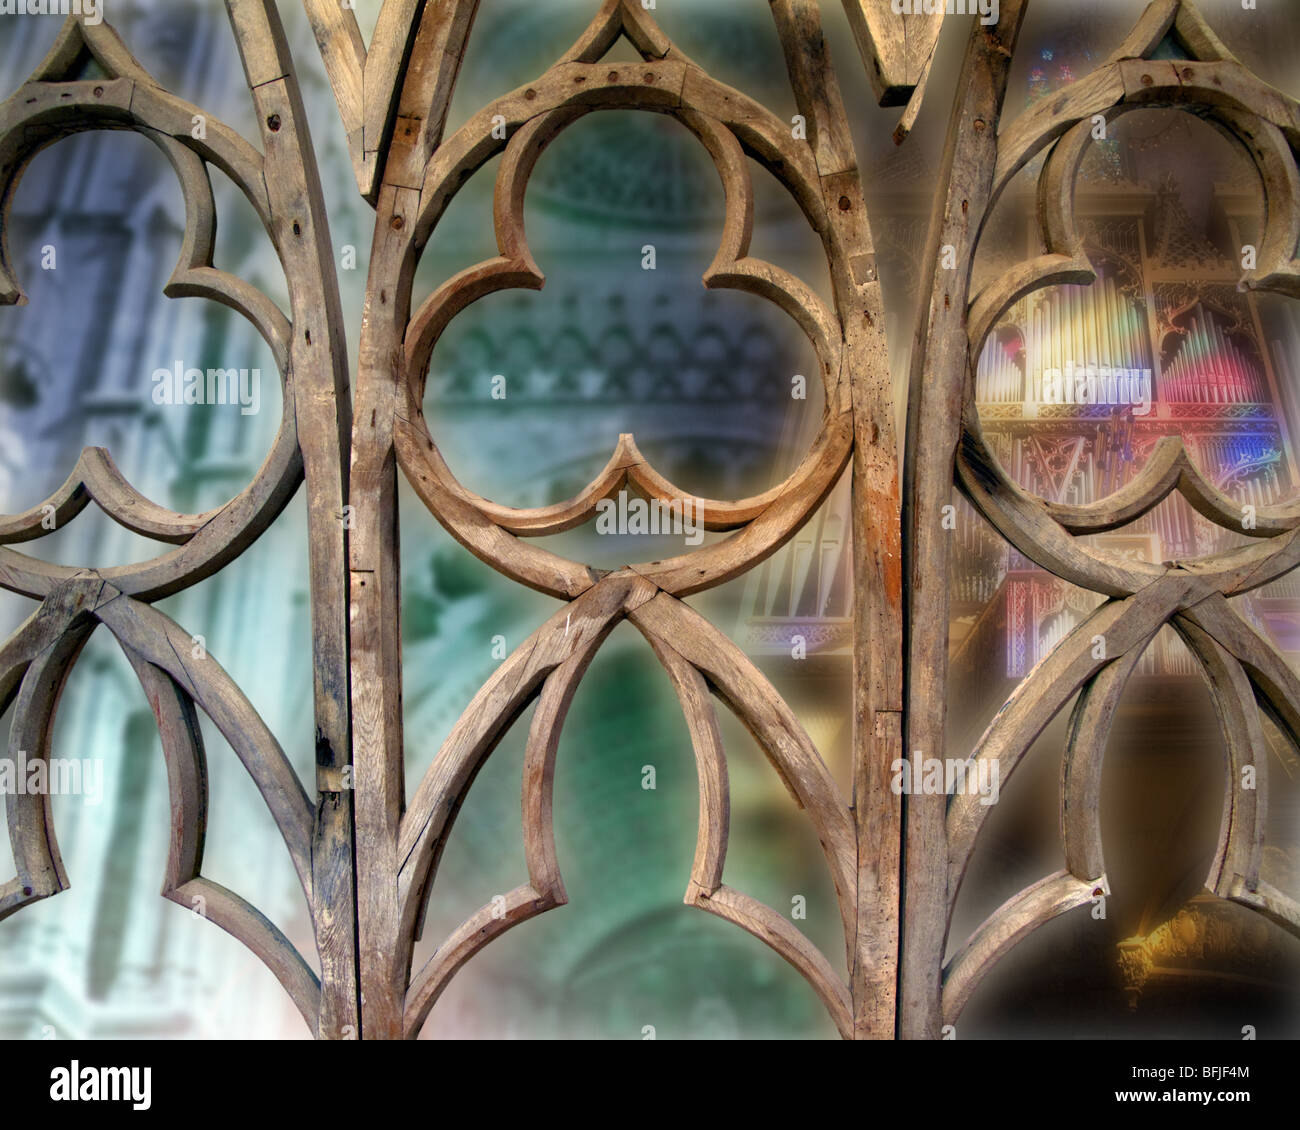 ES - MALLORCA : La Seu Cathedral à Palma de Majorque (Art numérique) Banque D'Images